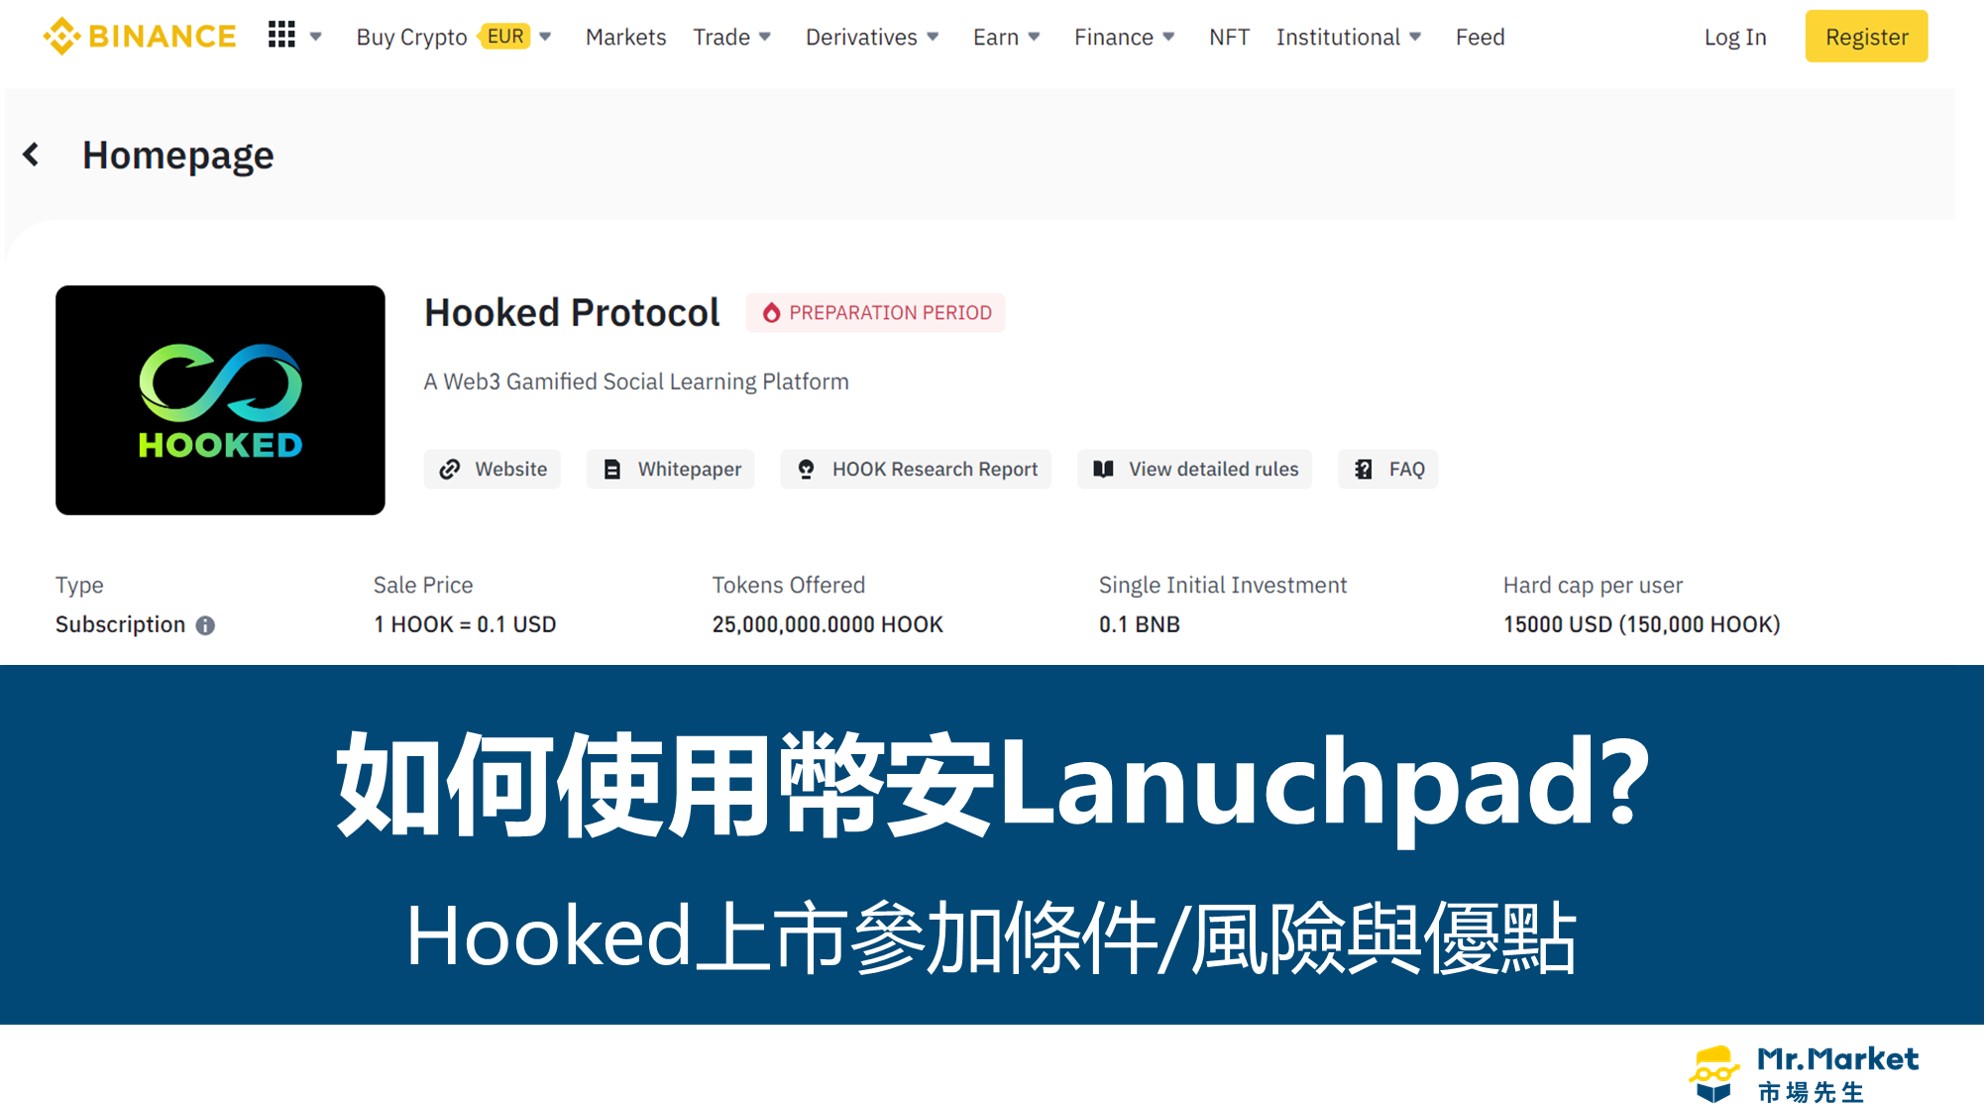 幣安Lanuchpad》Hooked上市參加條件及申購風險解析